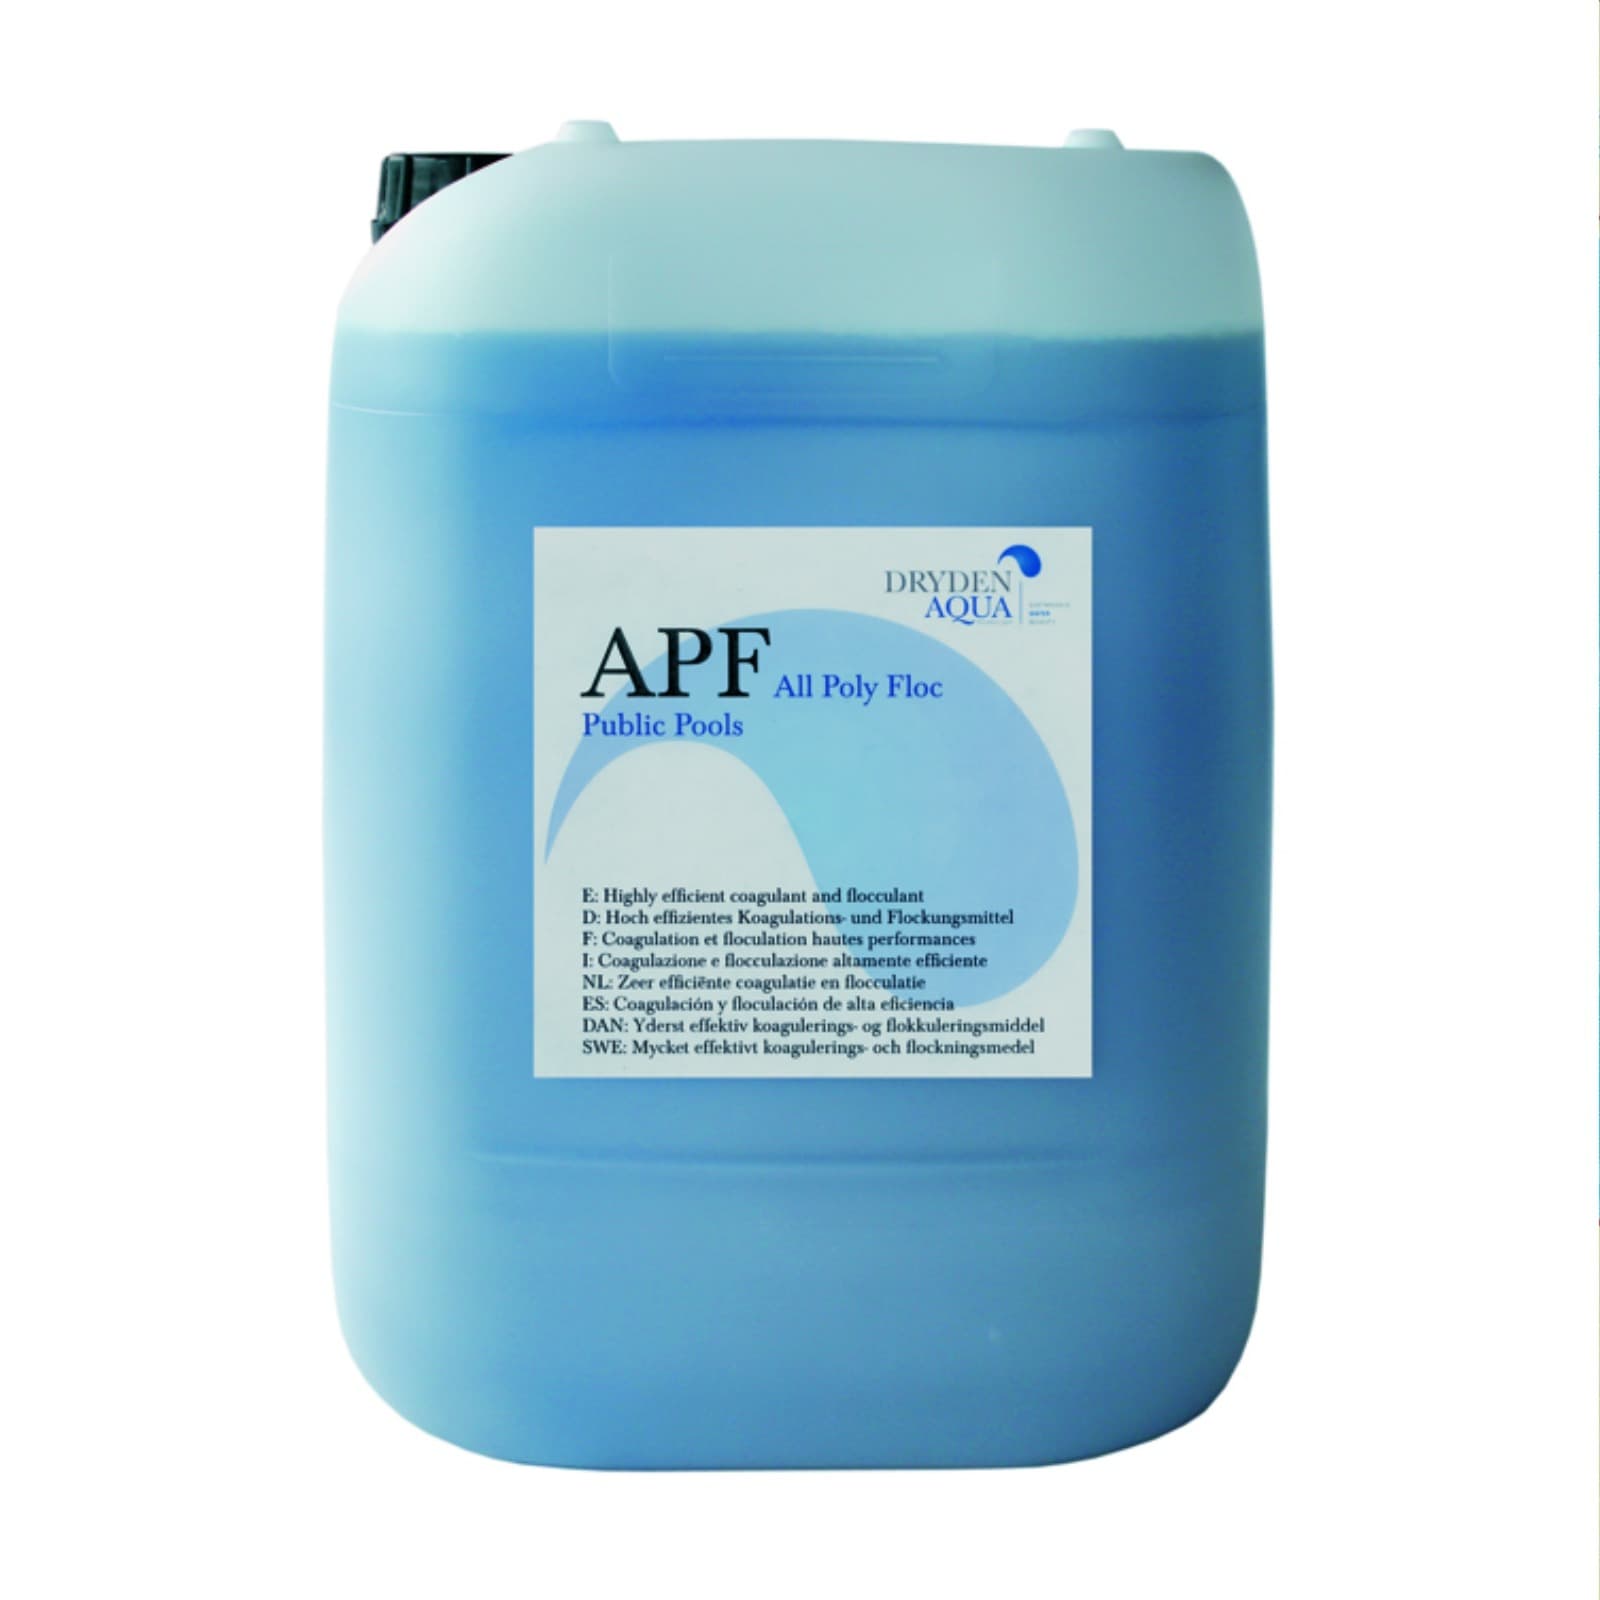 APF (All Poly Floc), Dryden Aqua